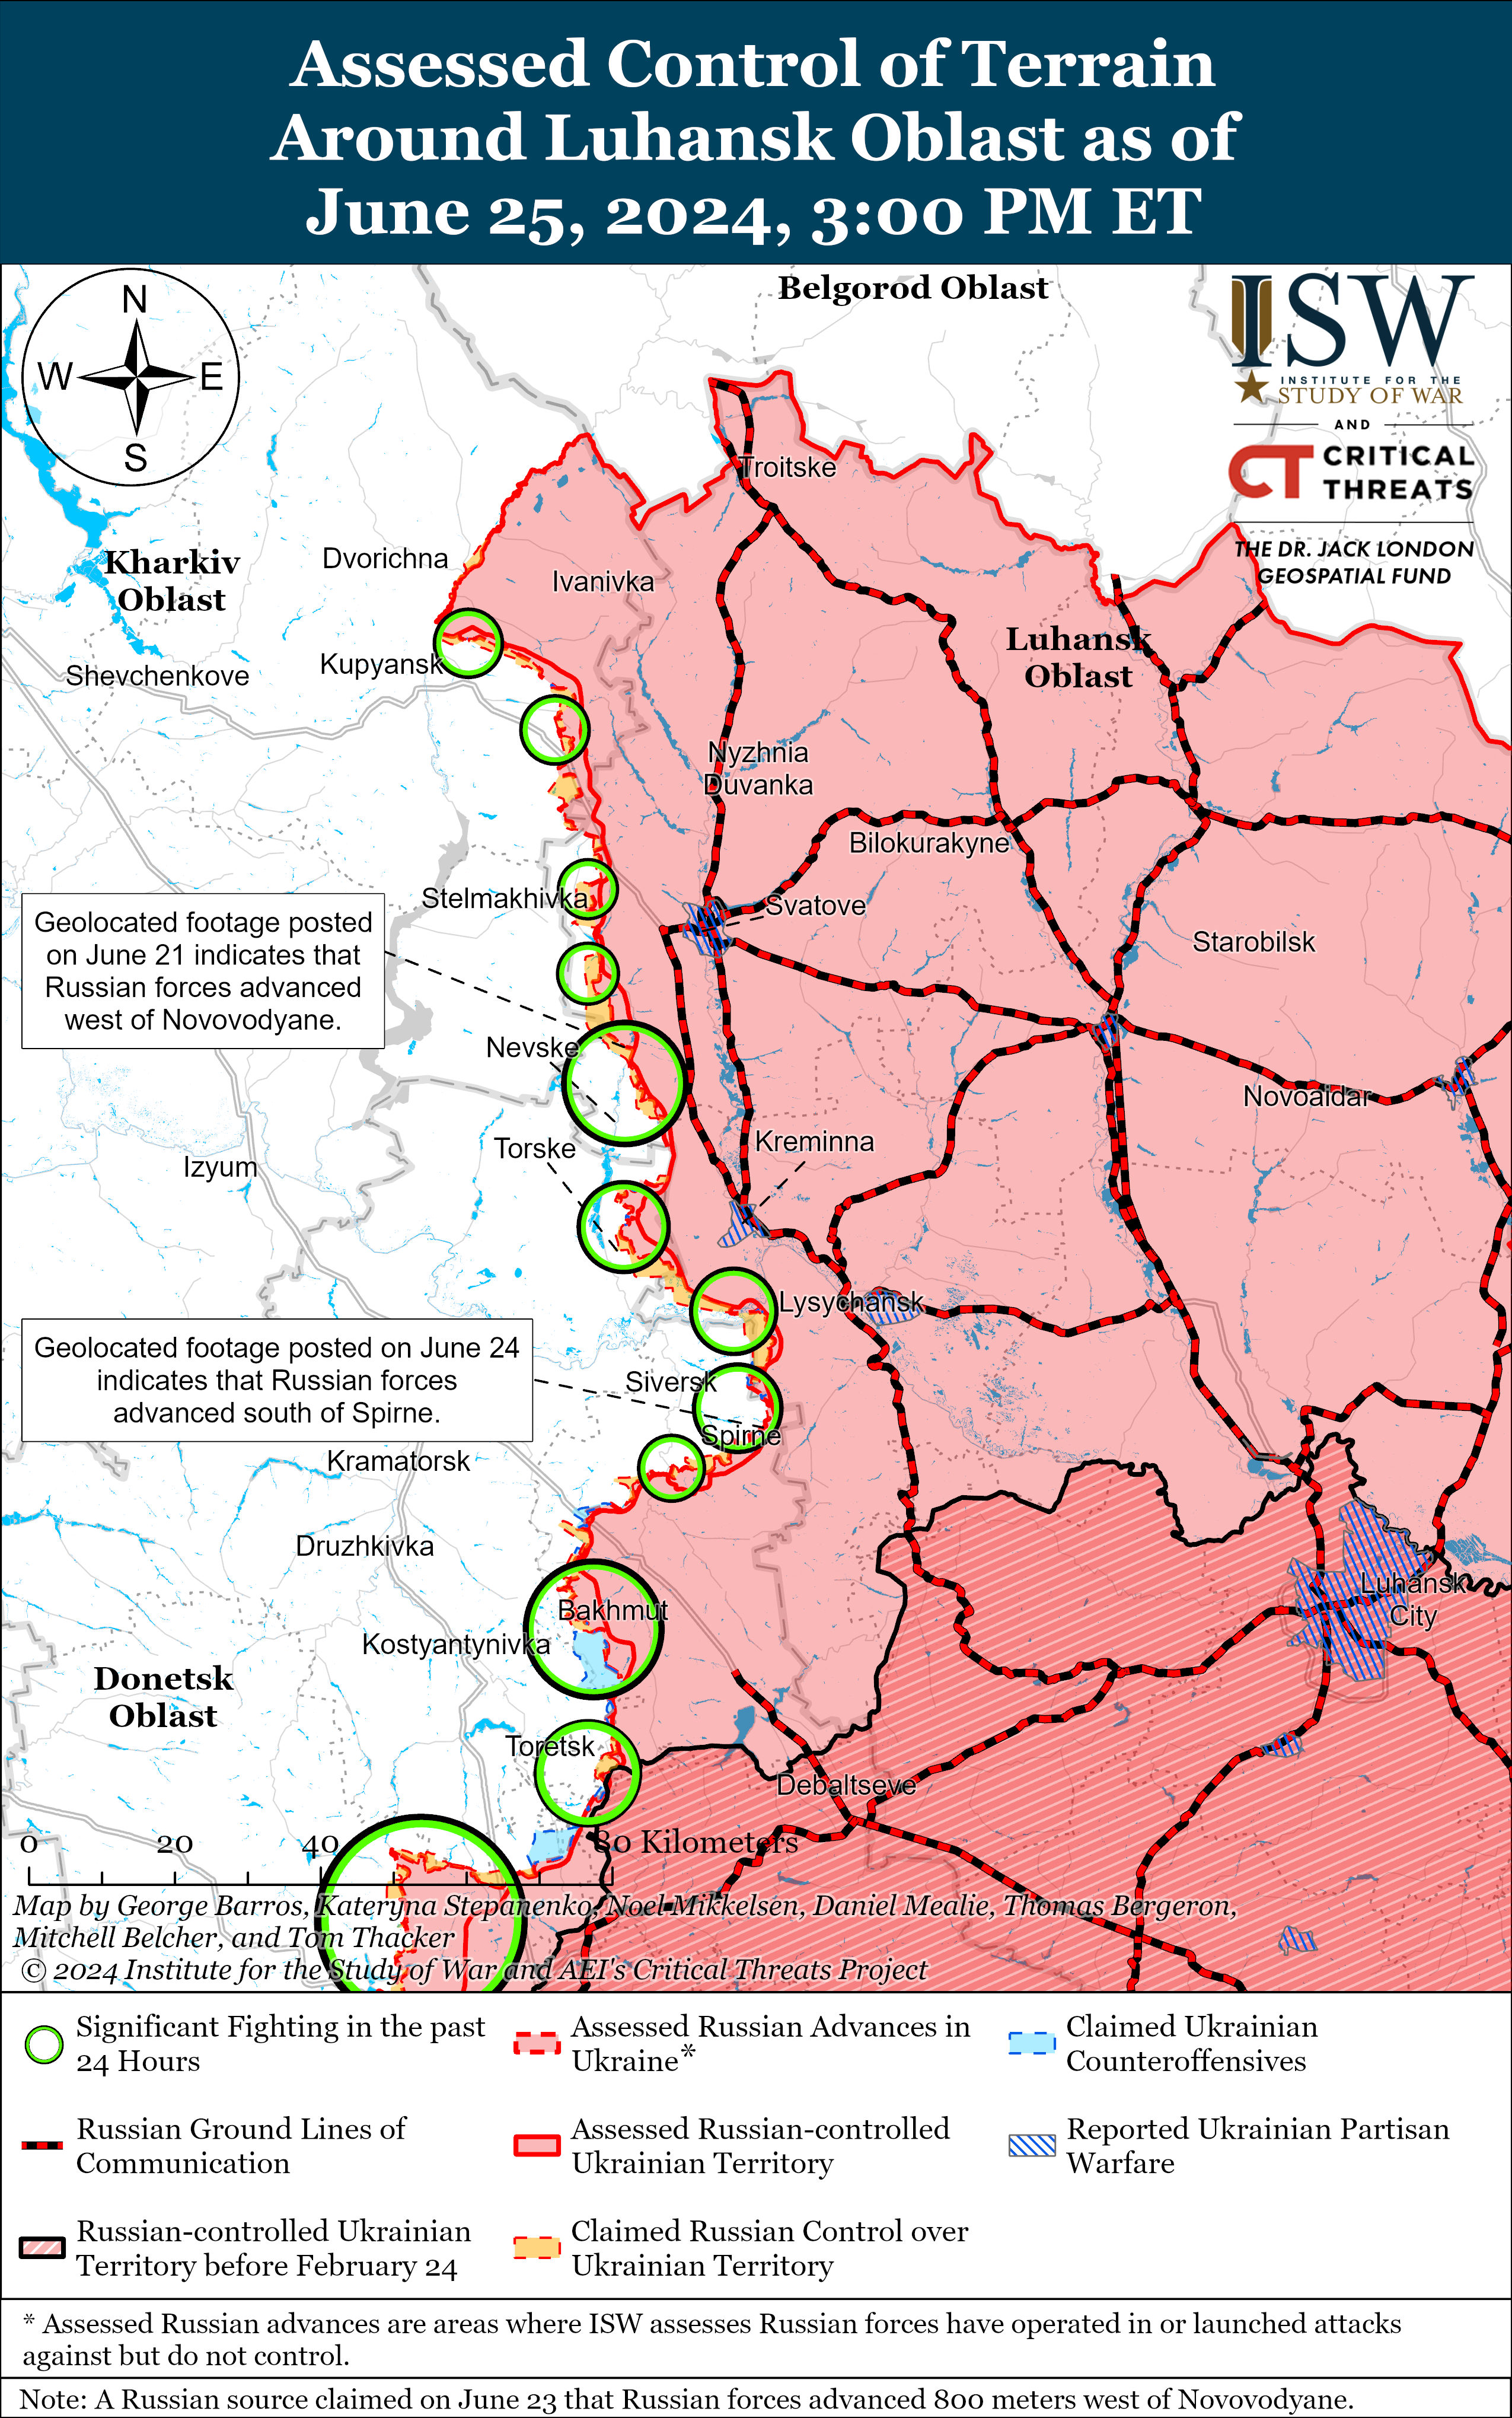 ЗСУ відновили позиції у Вовчанську, а РФ може кинути в Україну нову армію: карти ISW